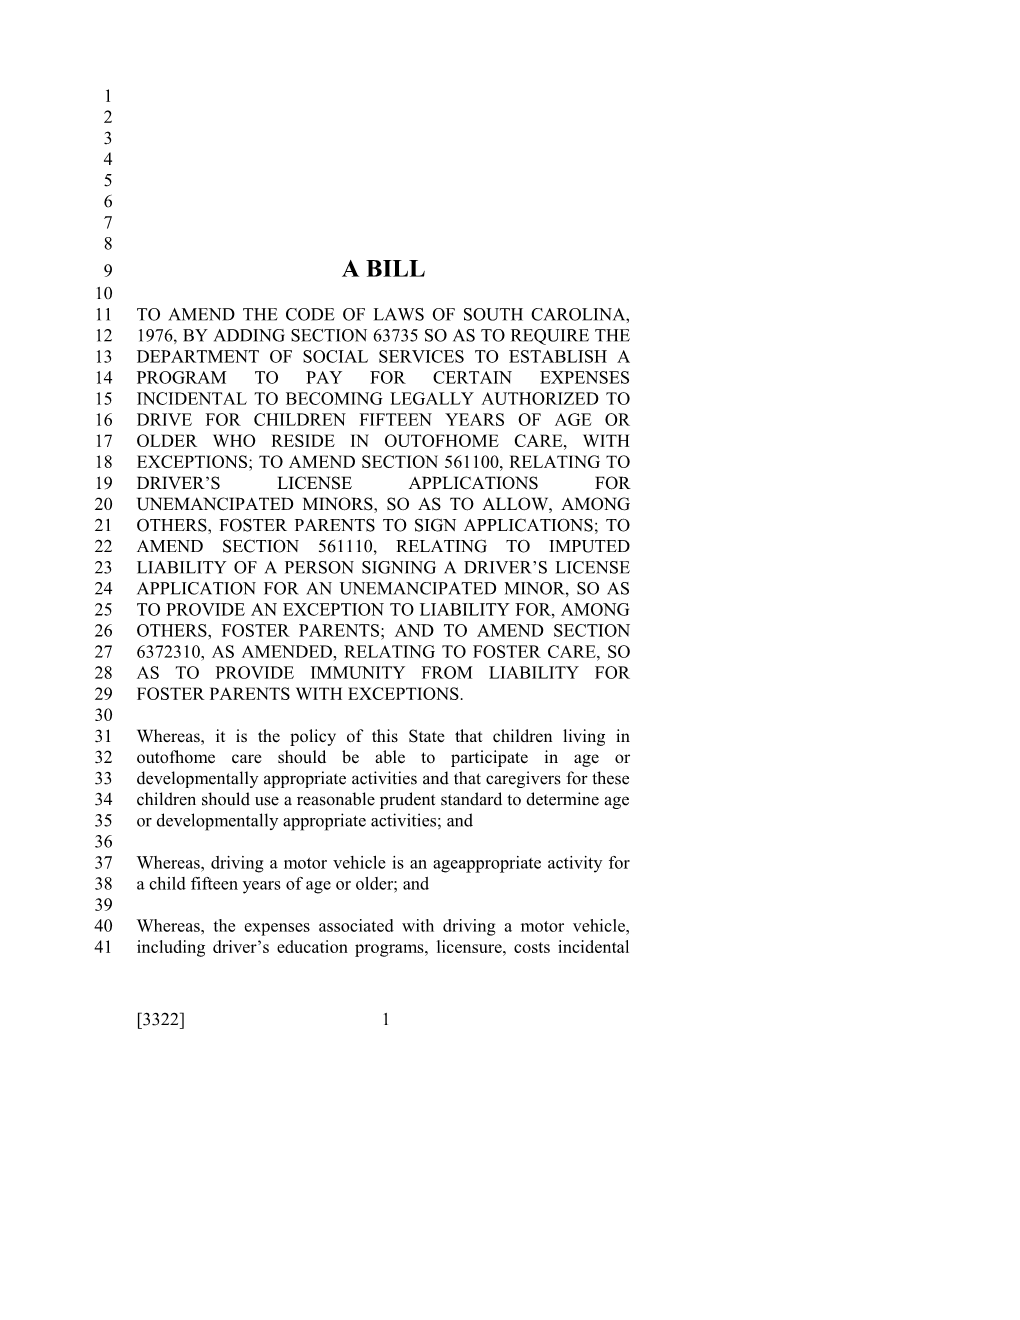 2017-2018 Bill 3322 Text of Previous Version (Dec. 15, 2016) - South Carolina Legislature Online